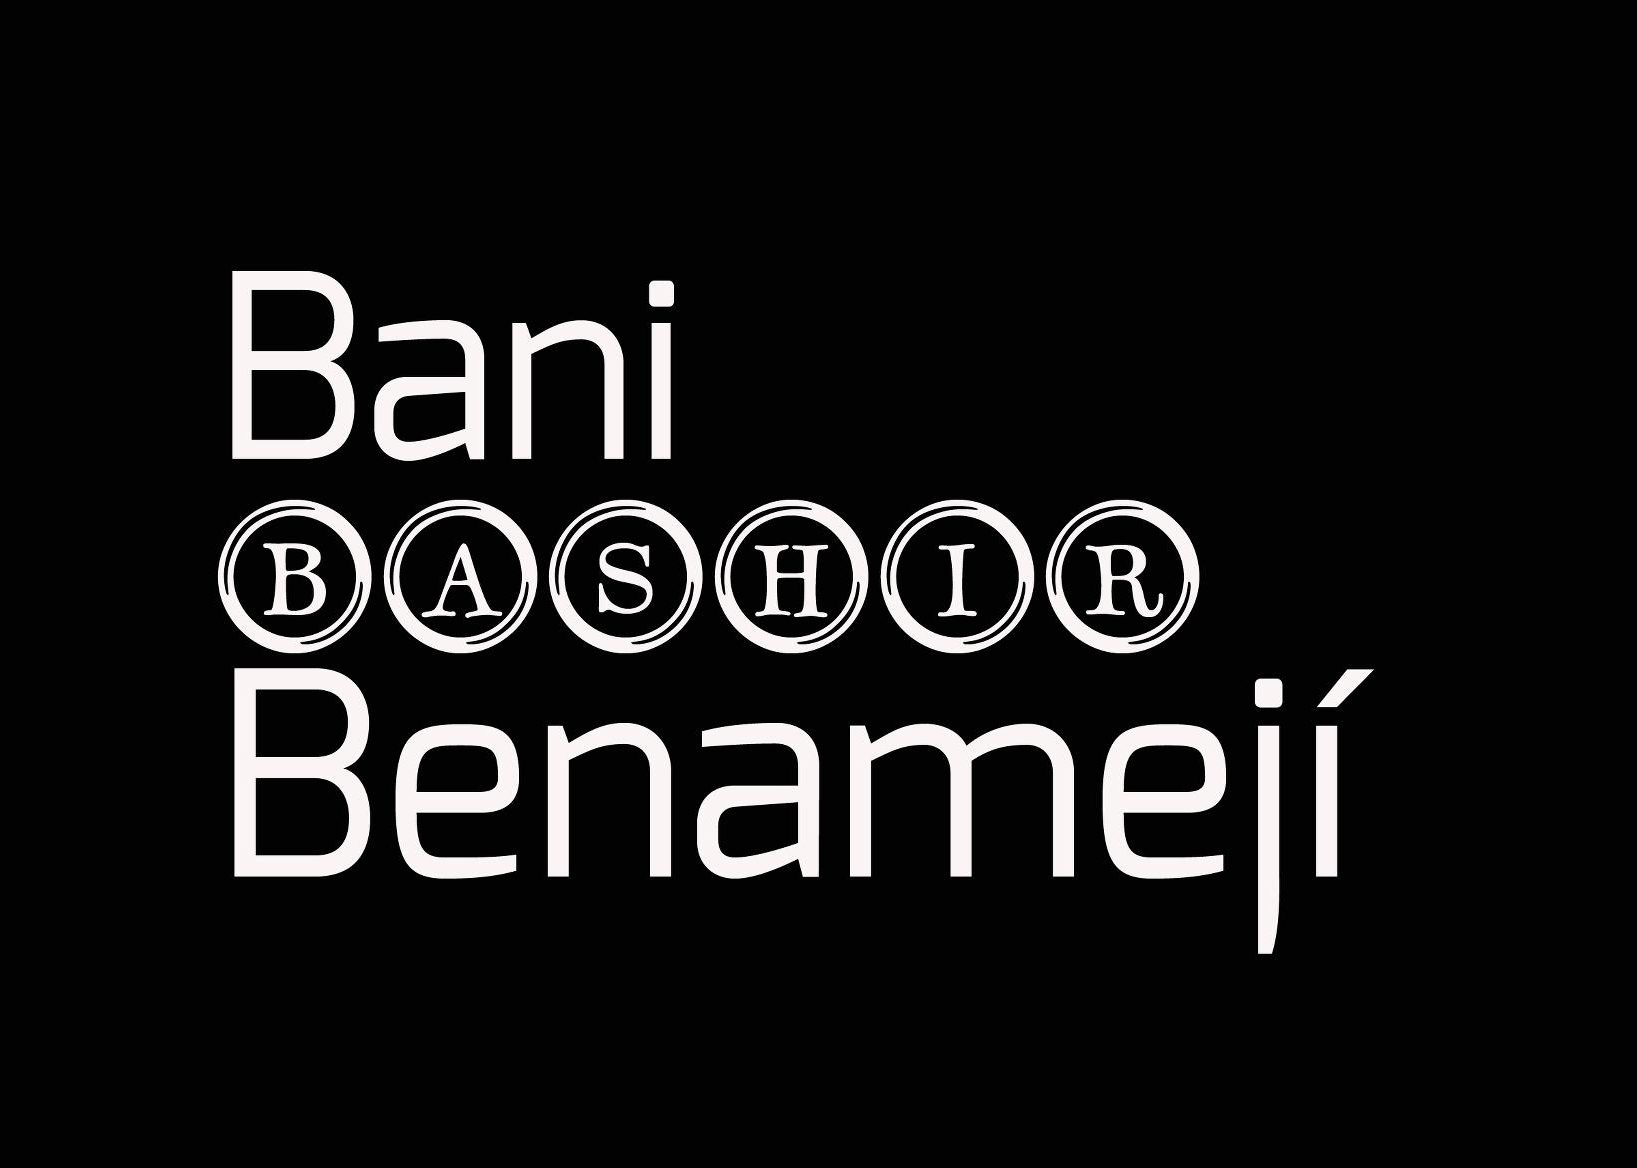 BaniBashir